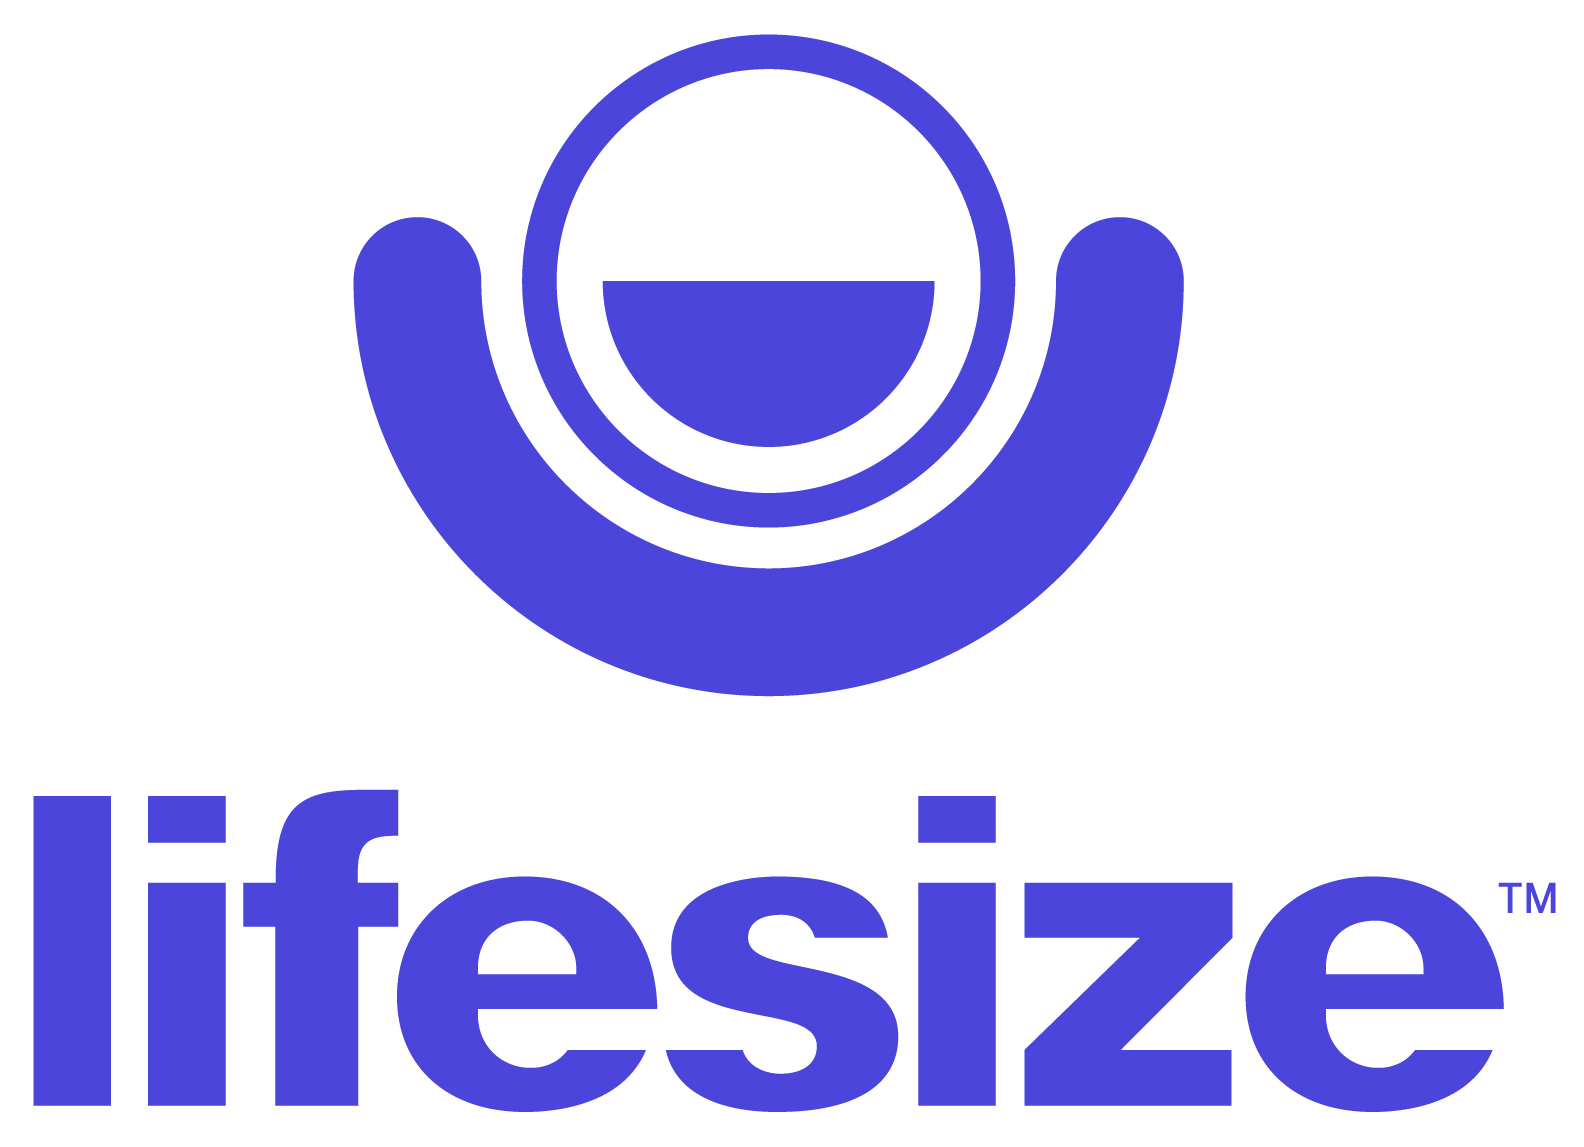 Lifesize-logo-for-website-1.jpeg